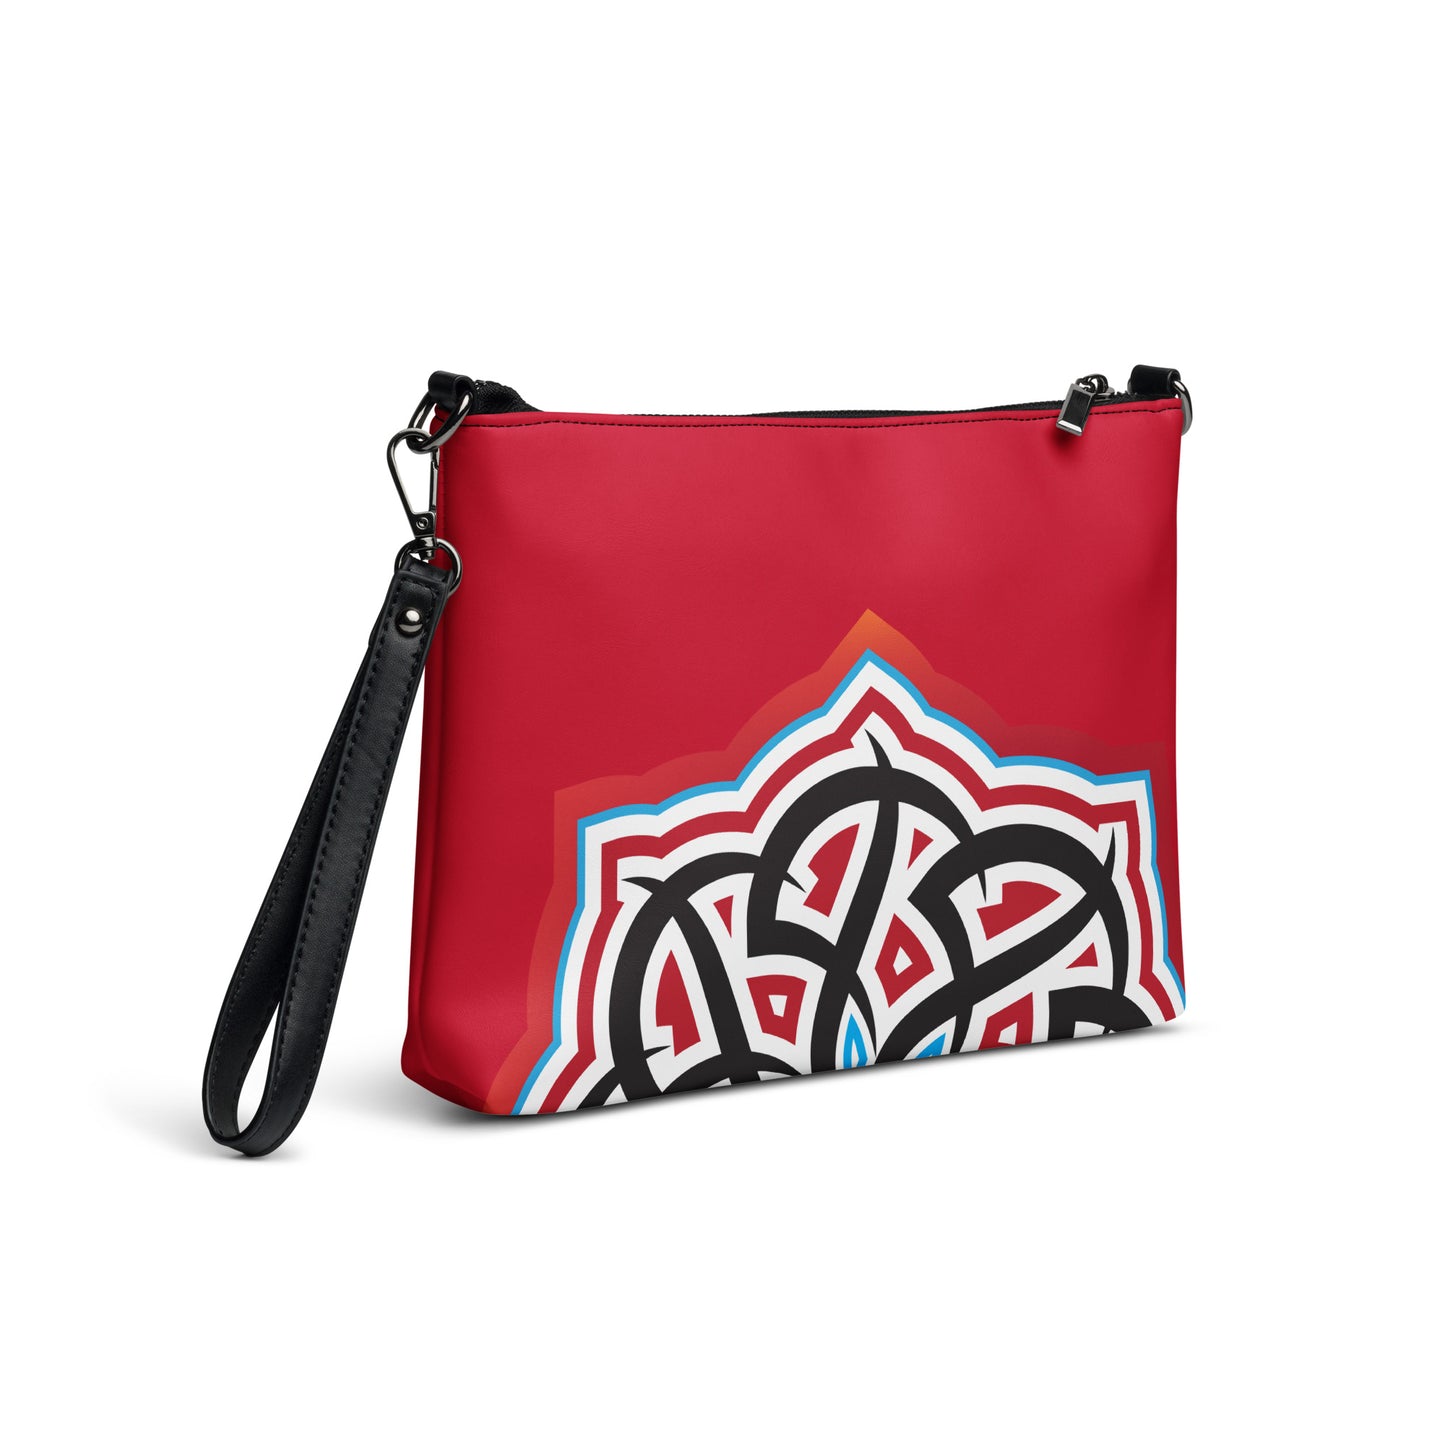 Arabian Summer Dream - Crossbody bag by Craitza© Red Edition